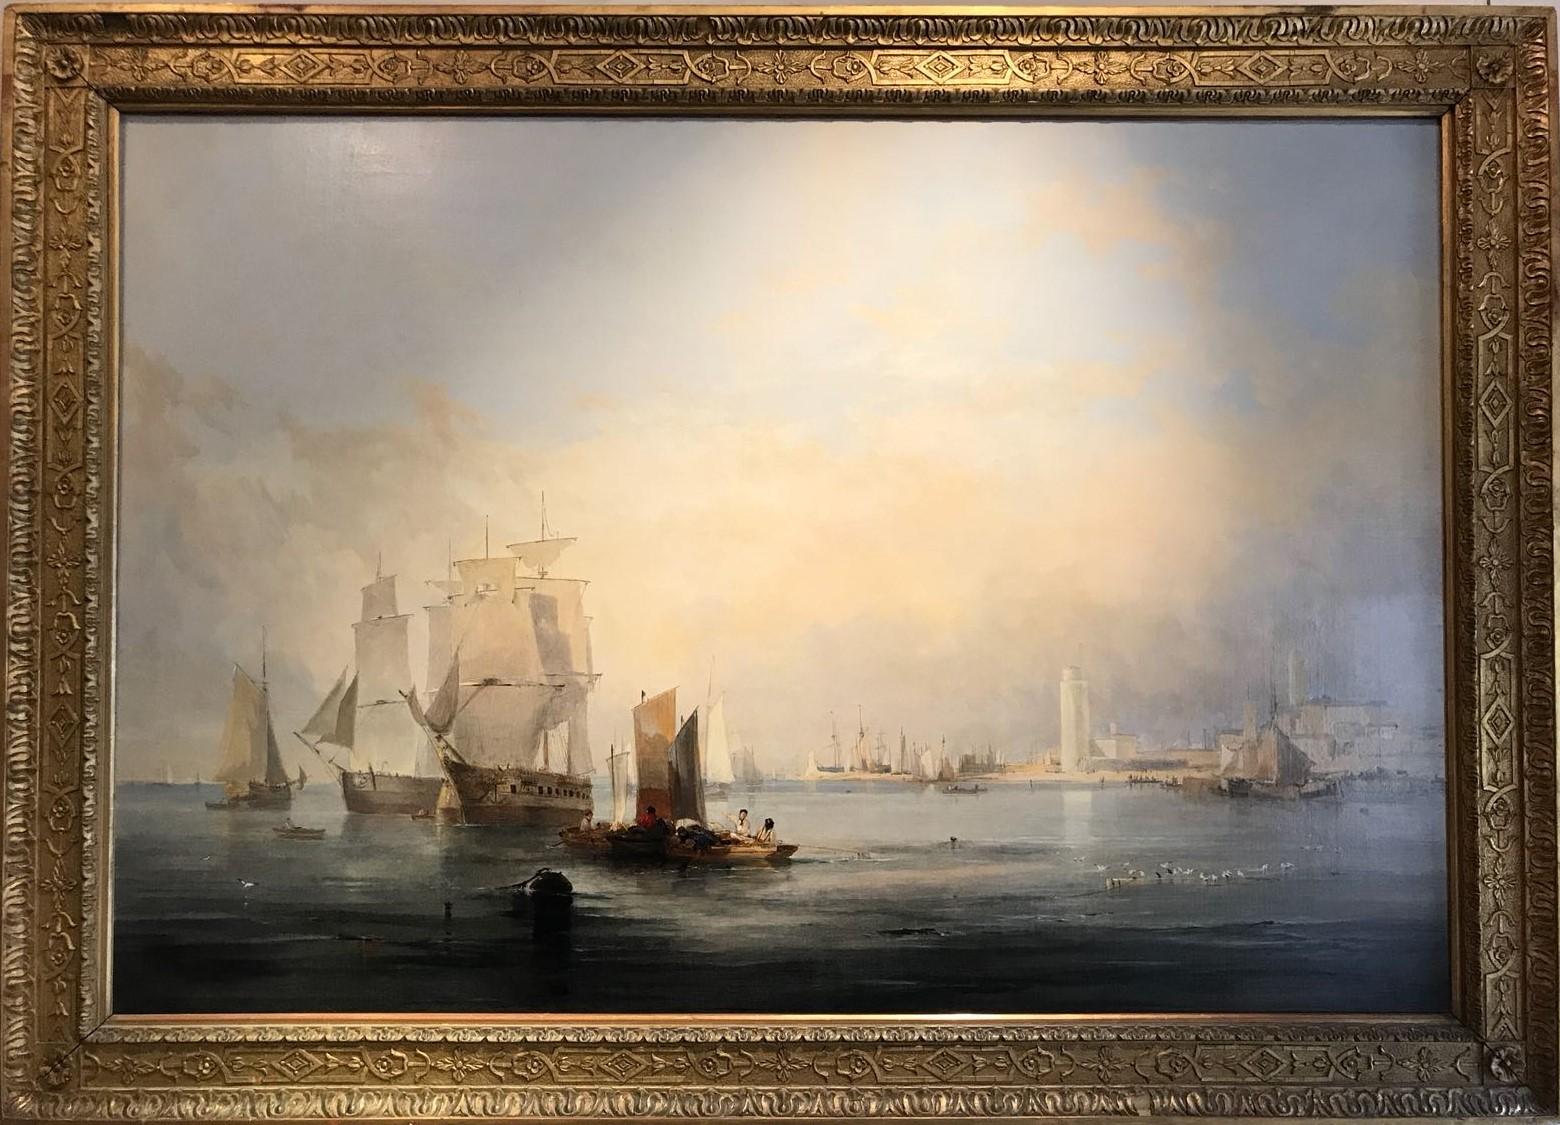 John Wilson Ewbank Figurative Painting - Grand 19th Century English Marine Painting in Stunning Light